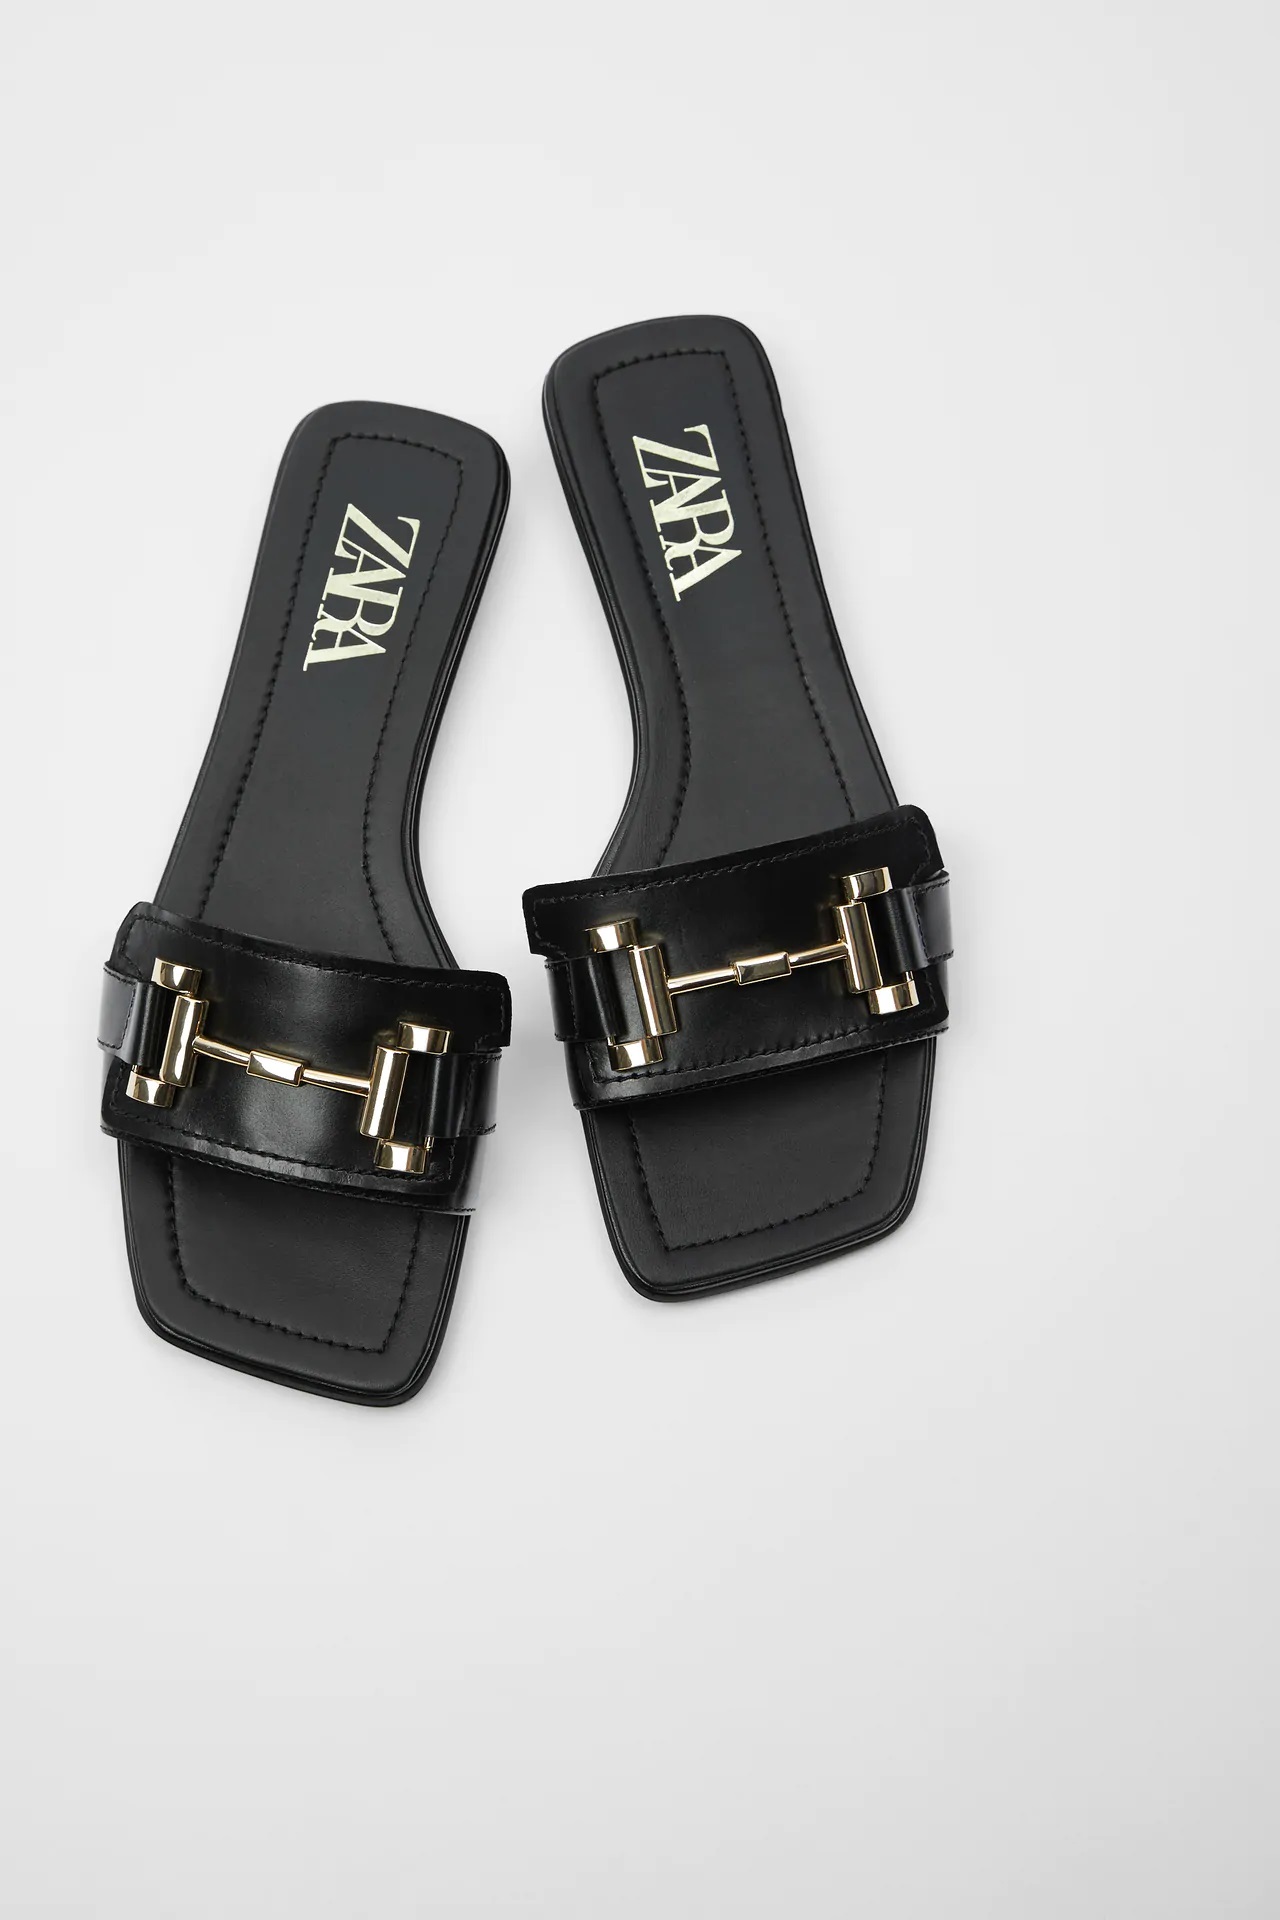 Estas son las sandalias planas de Zara más buscadas, de piel, cómodas y con estilo por 15,99 euros